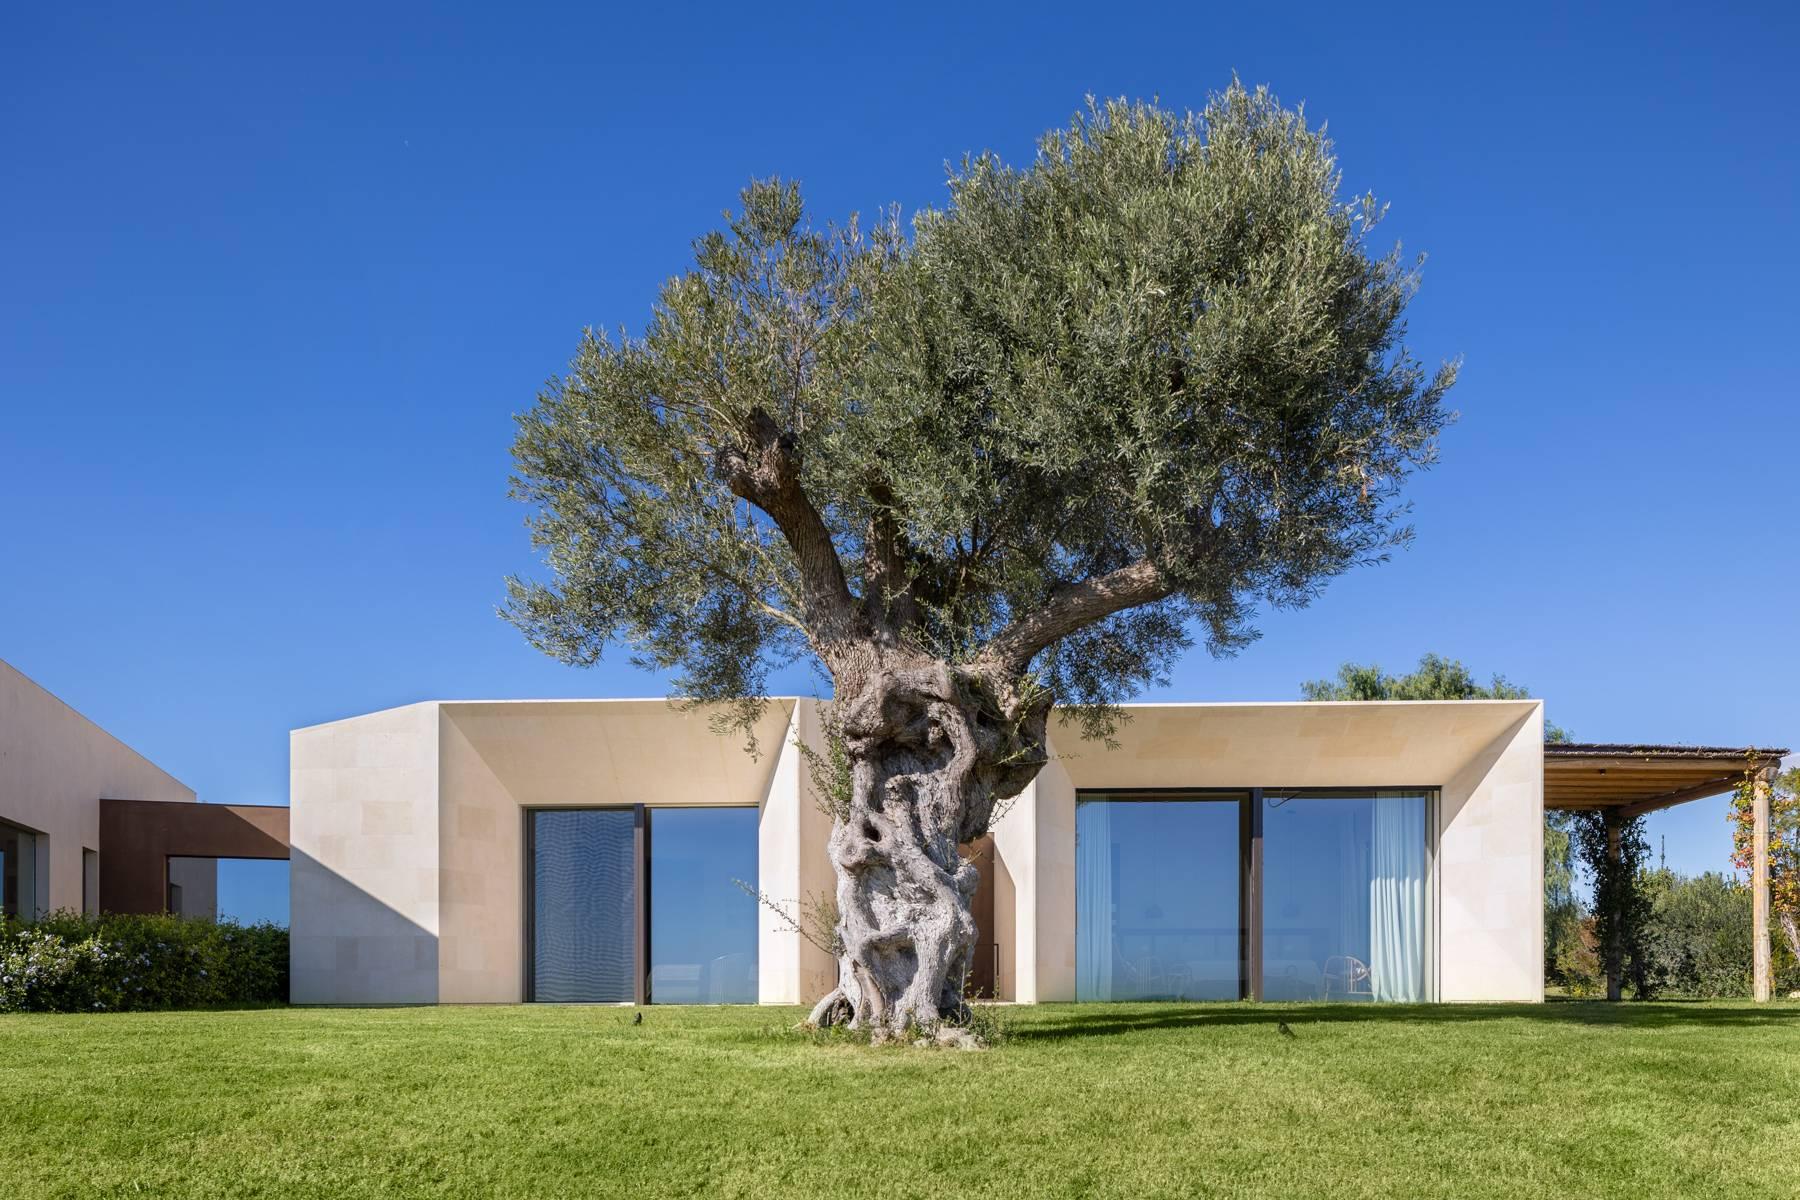 Luxury modern villa design in Noto - 3